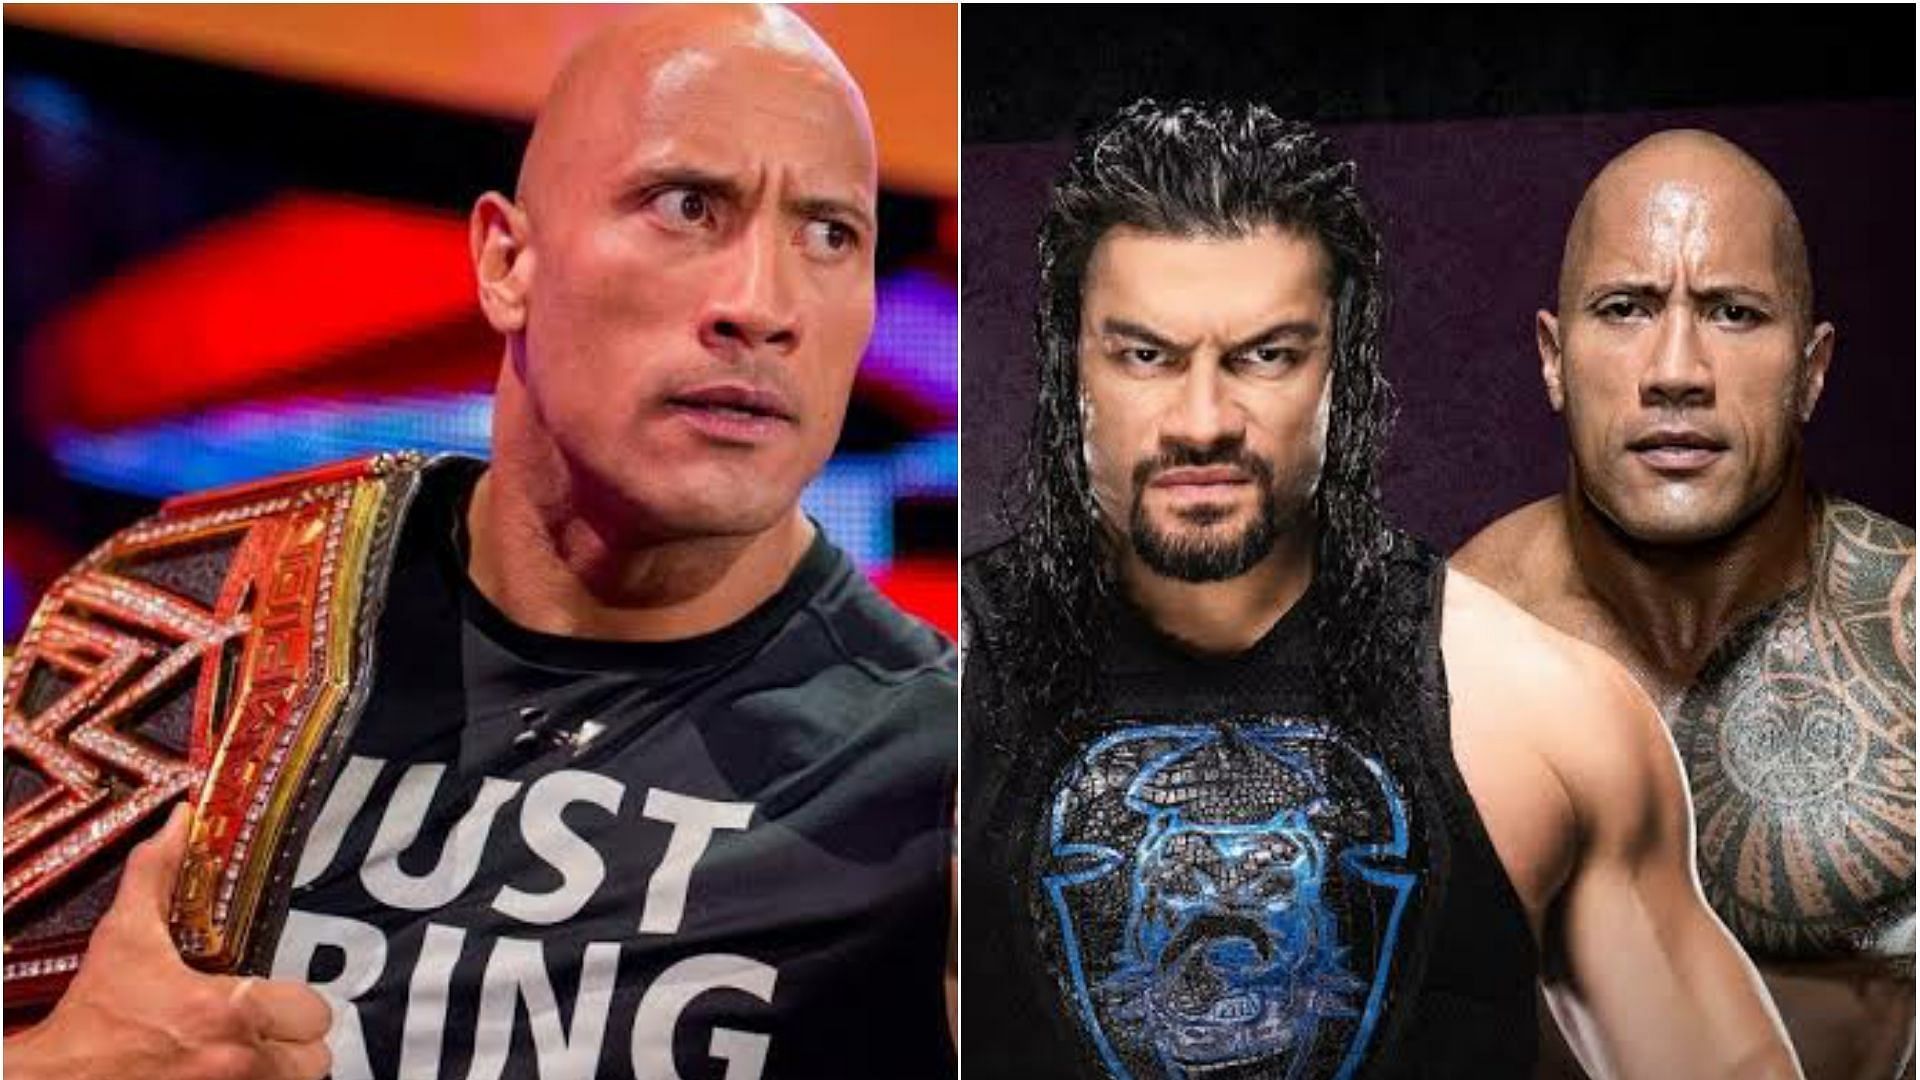 Will The Rock vs. Roman Reigns happen in WWE?